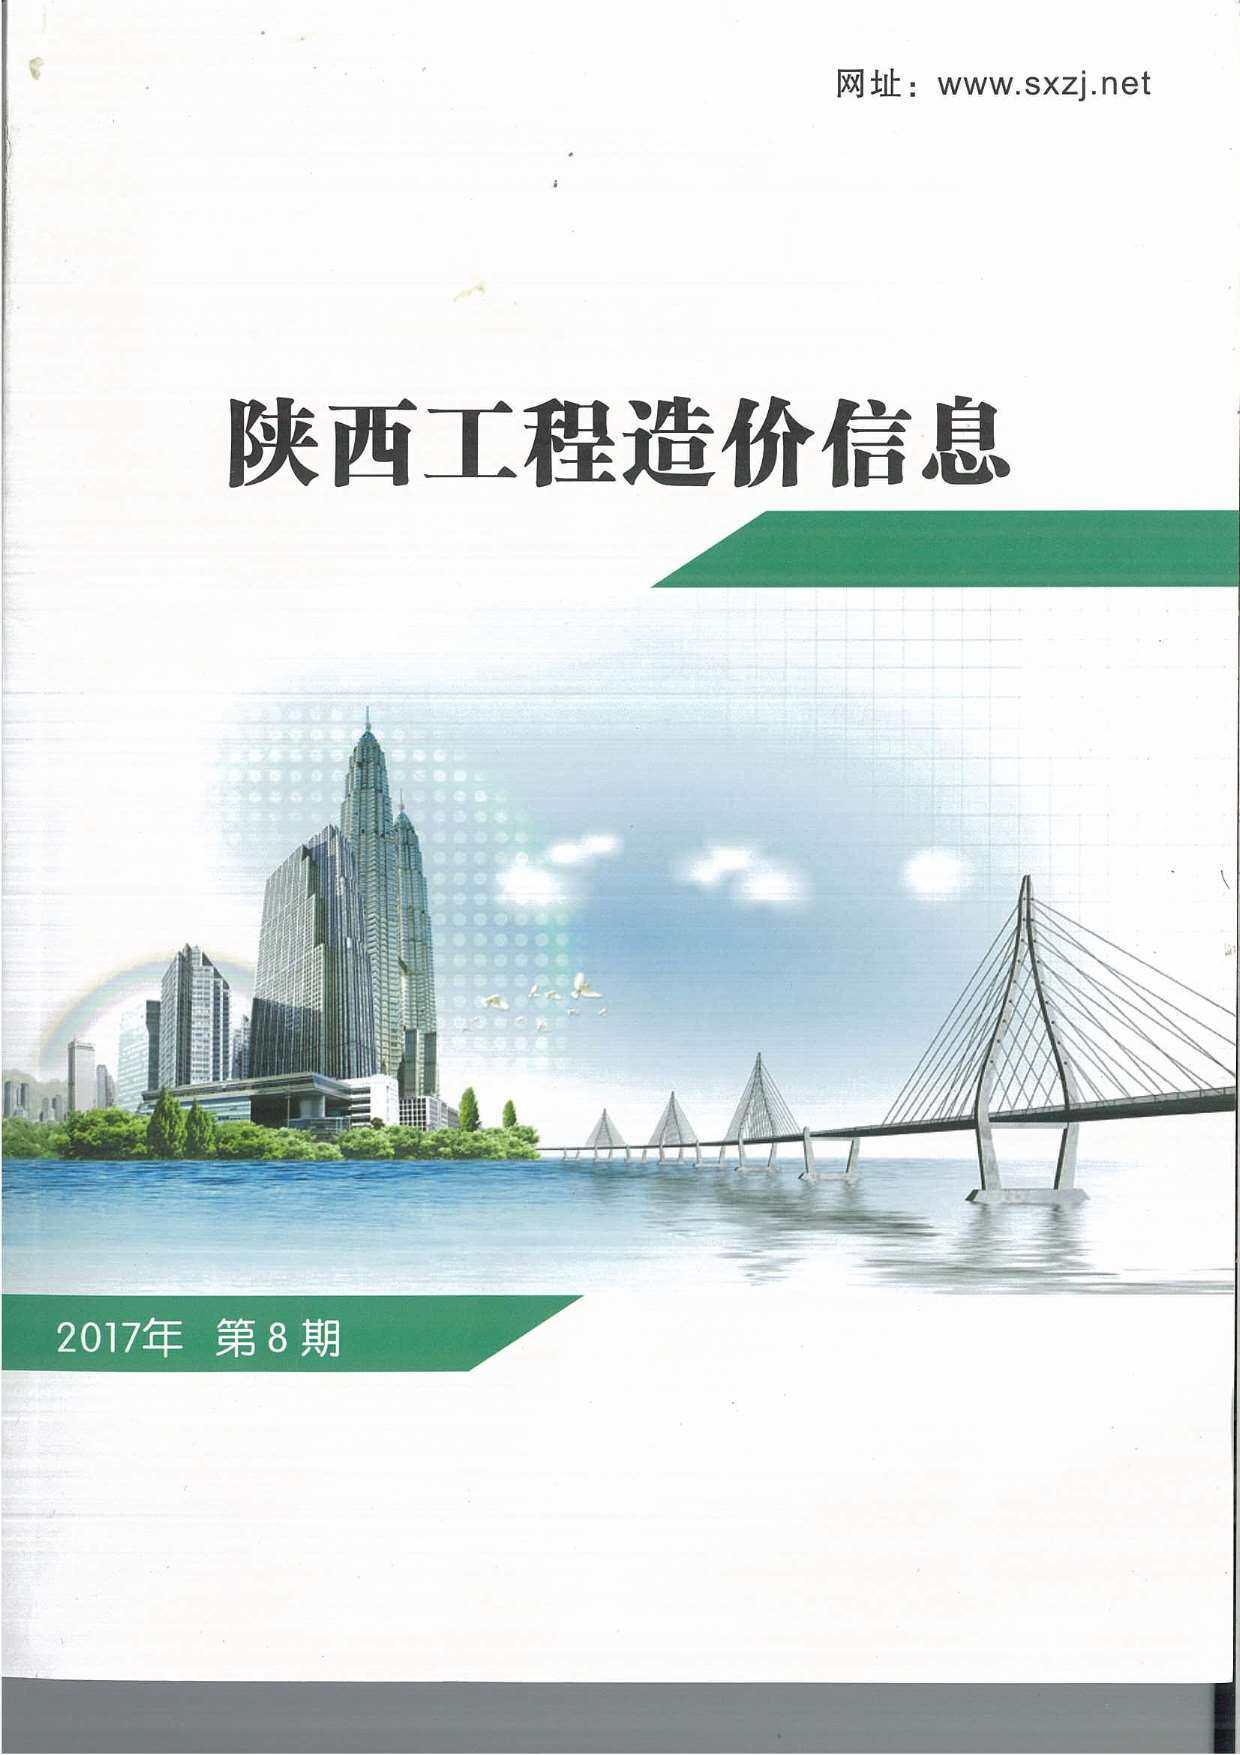 陕西省2017年8月工程造价信息期刊